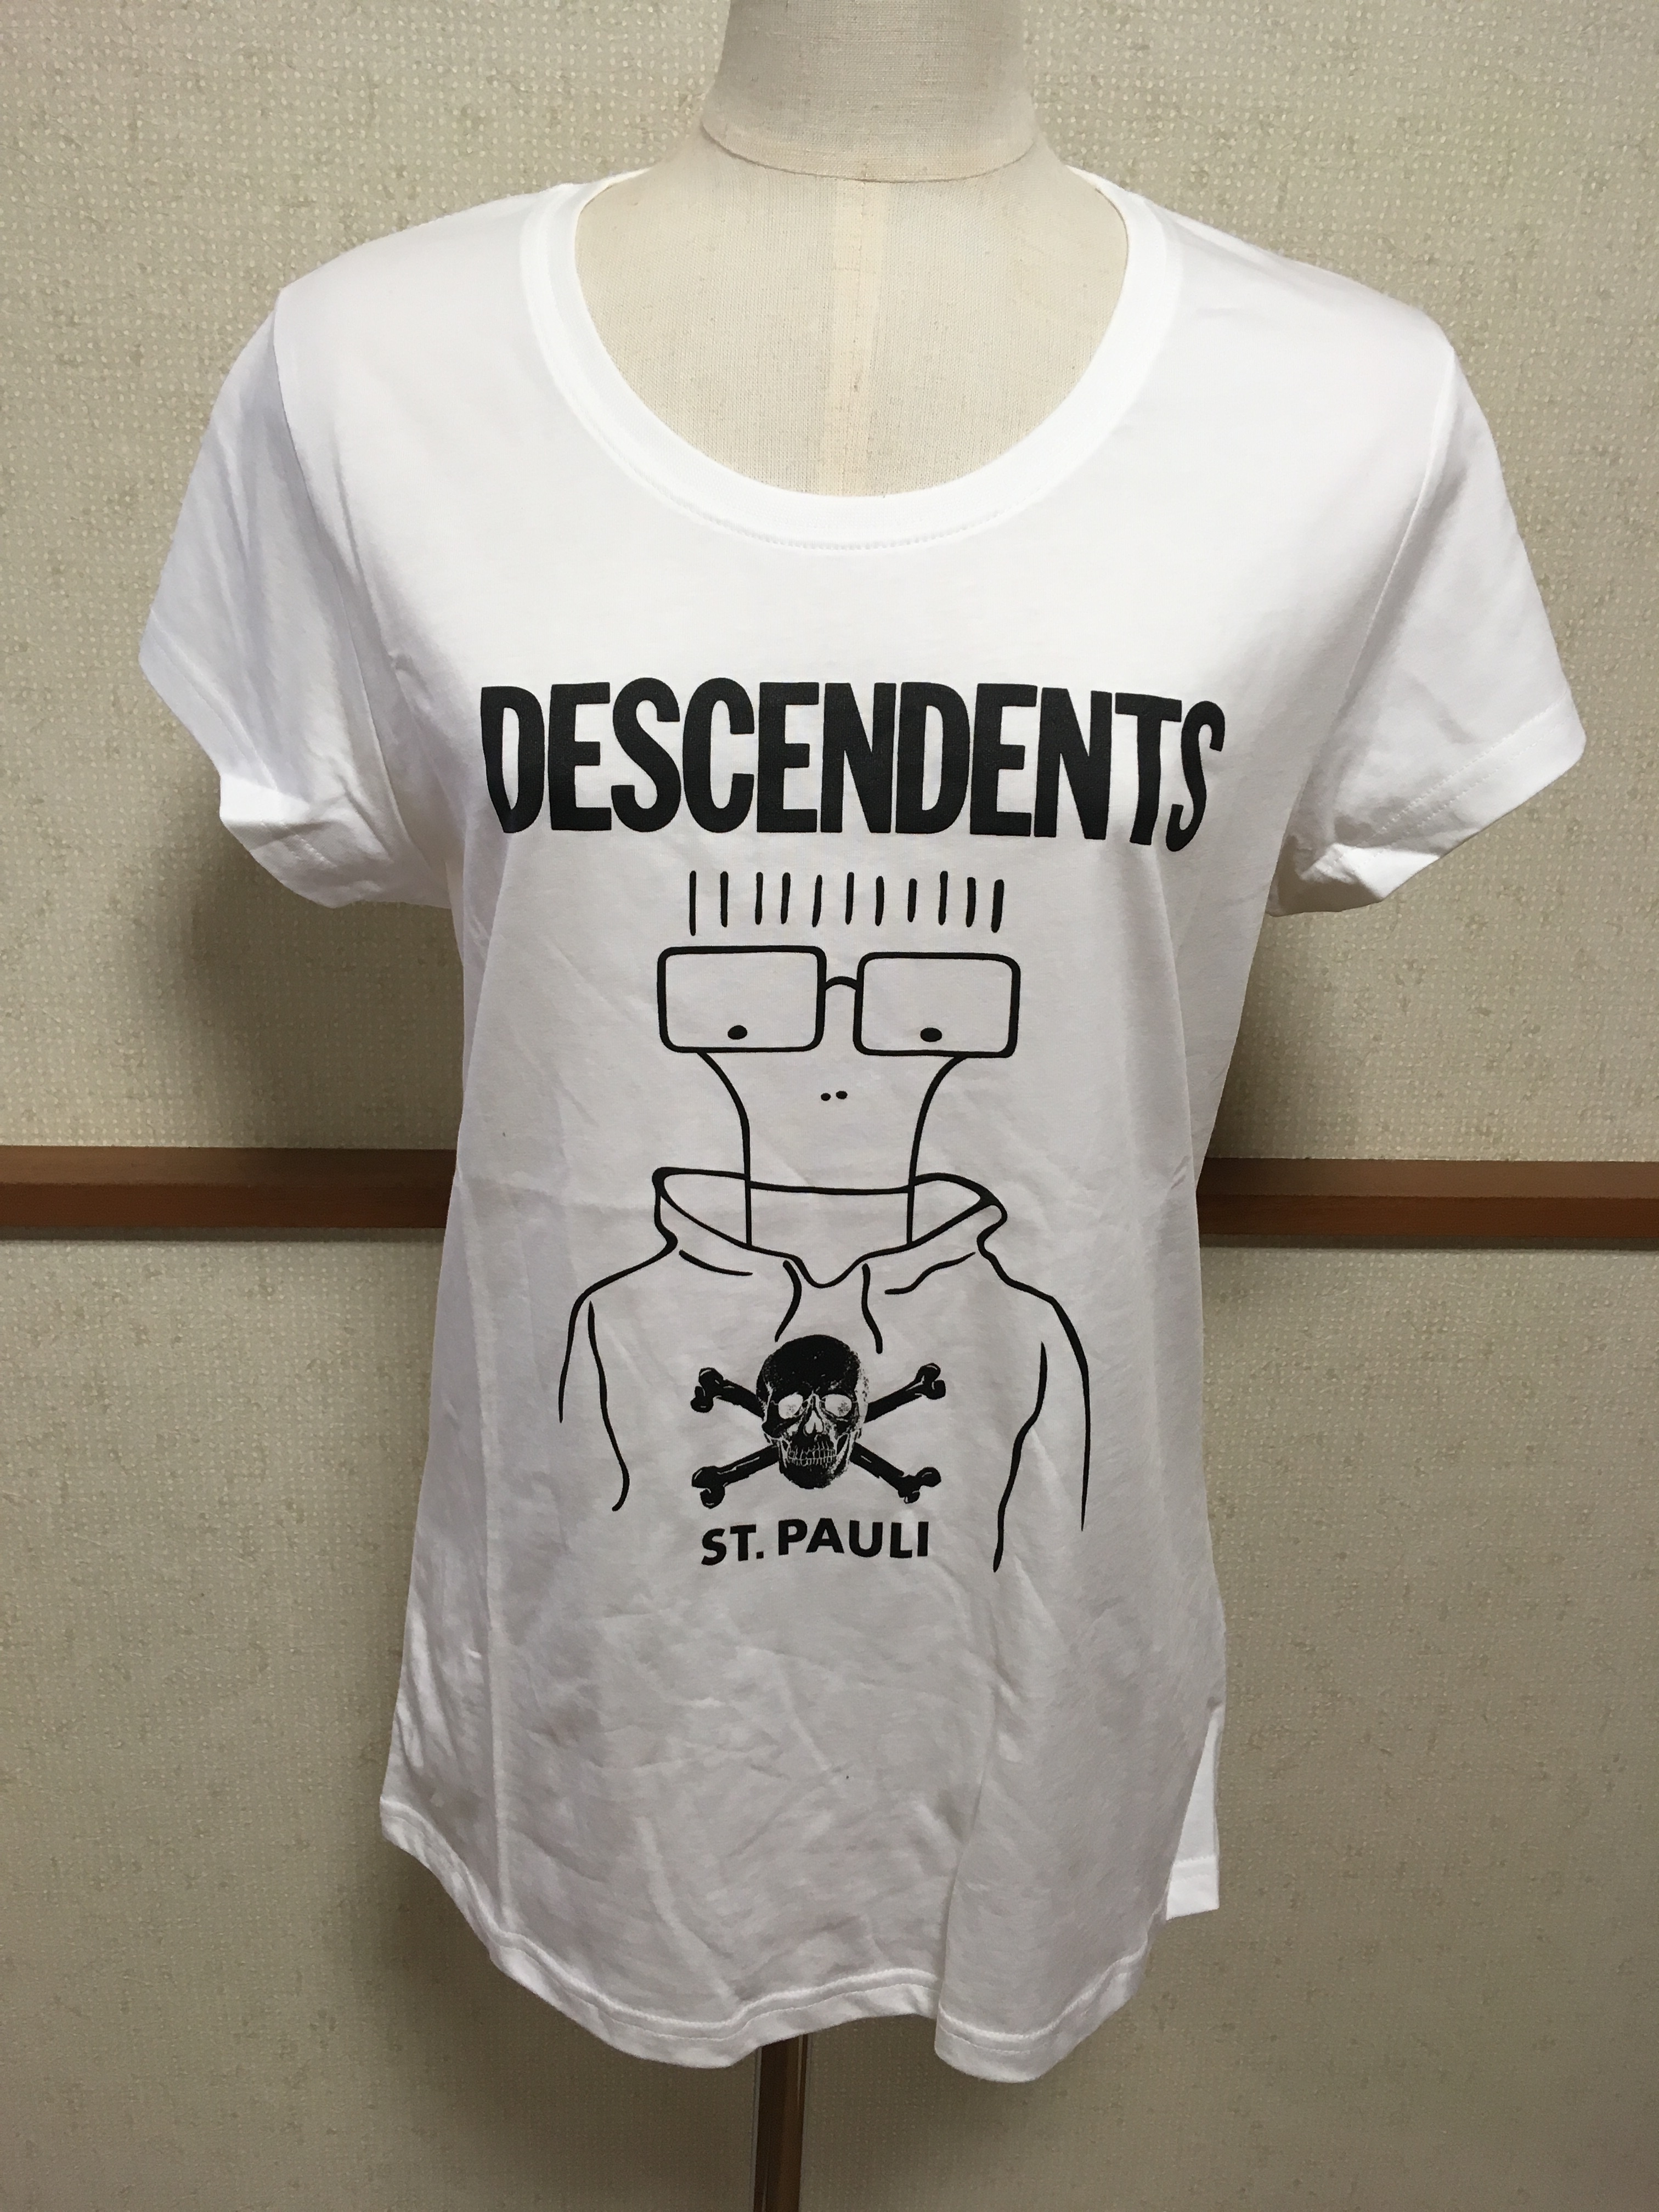 ザンクトパウリ 18 19 公式tシャツ Descendents ディセンデンツ コラボグッズ レディース Freak スポーツウェア通販 海外ブランド 日本国内未入荷 海外直輸入